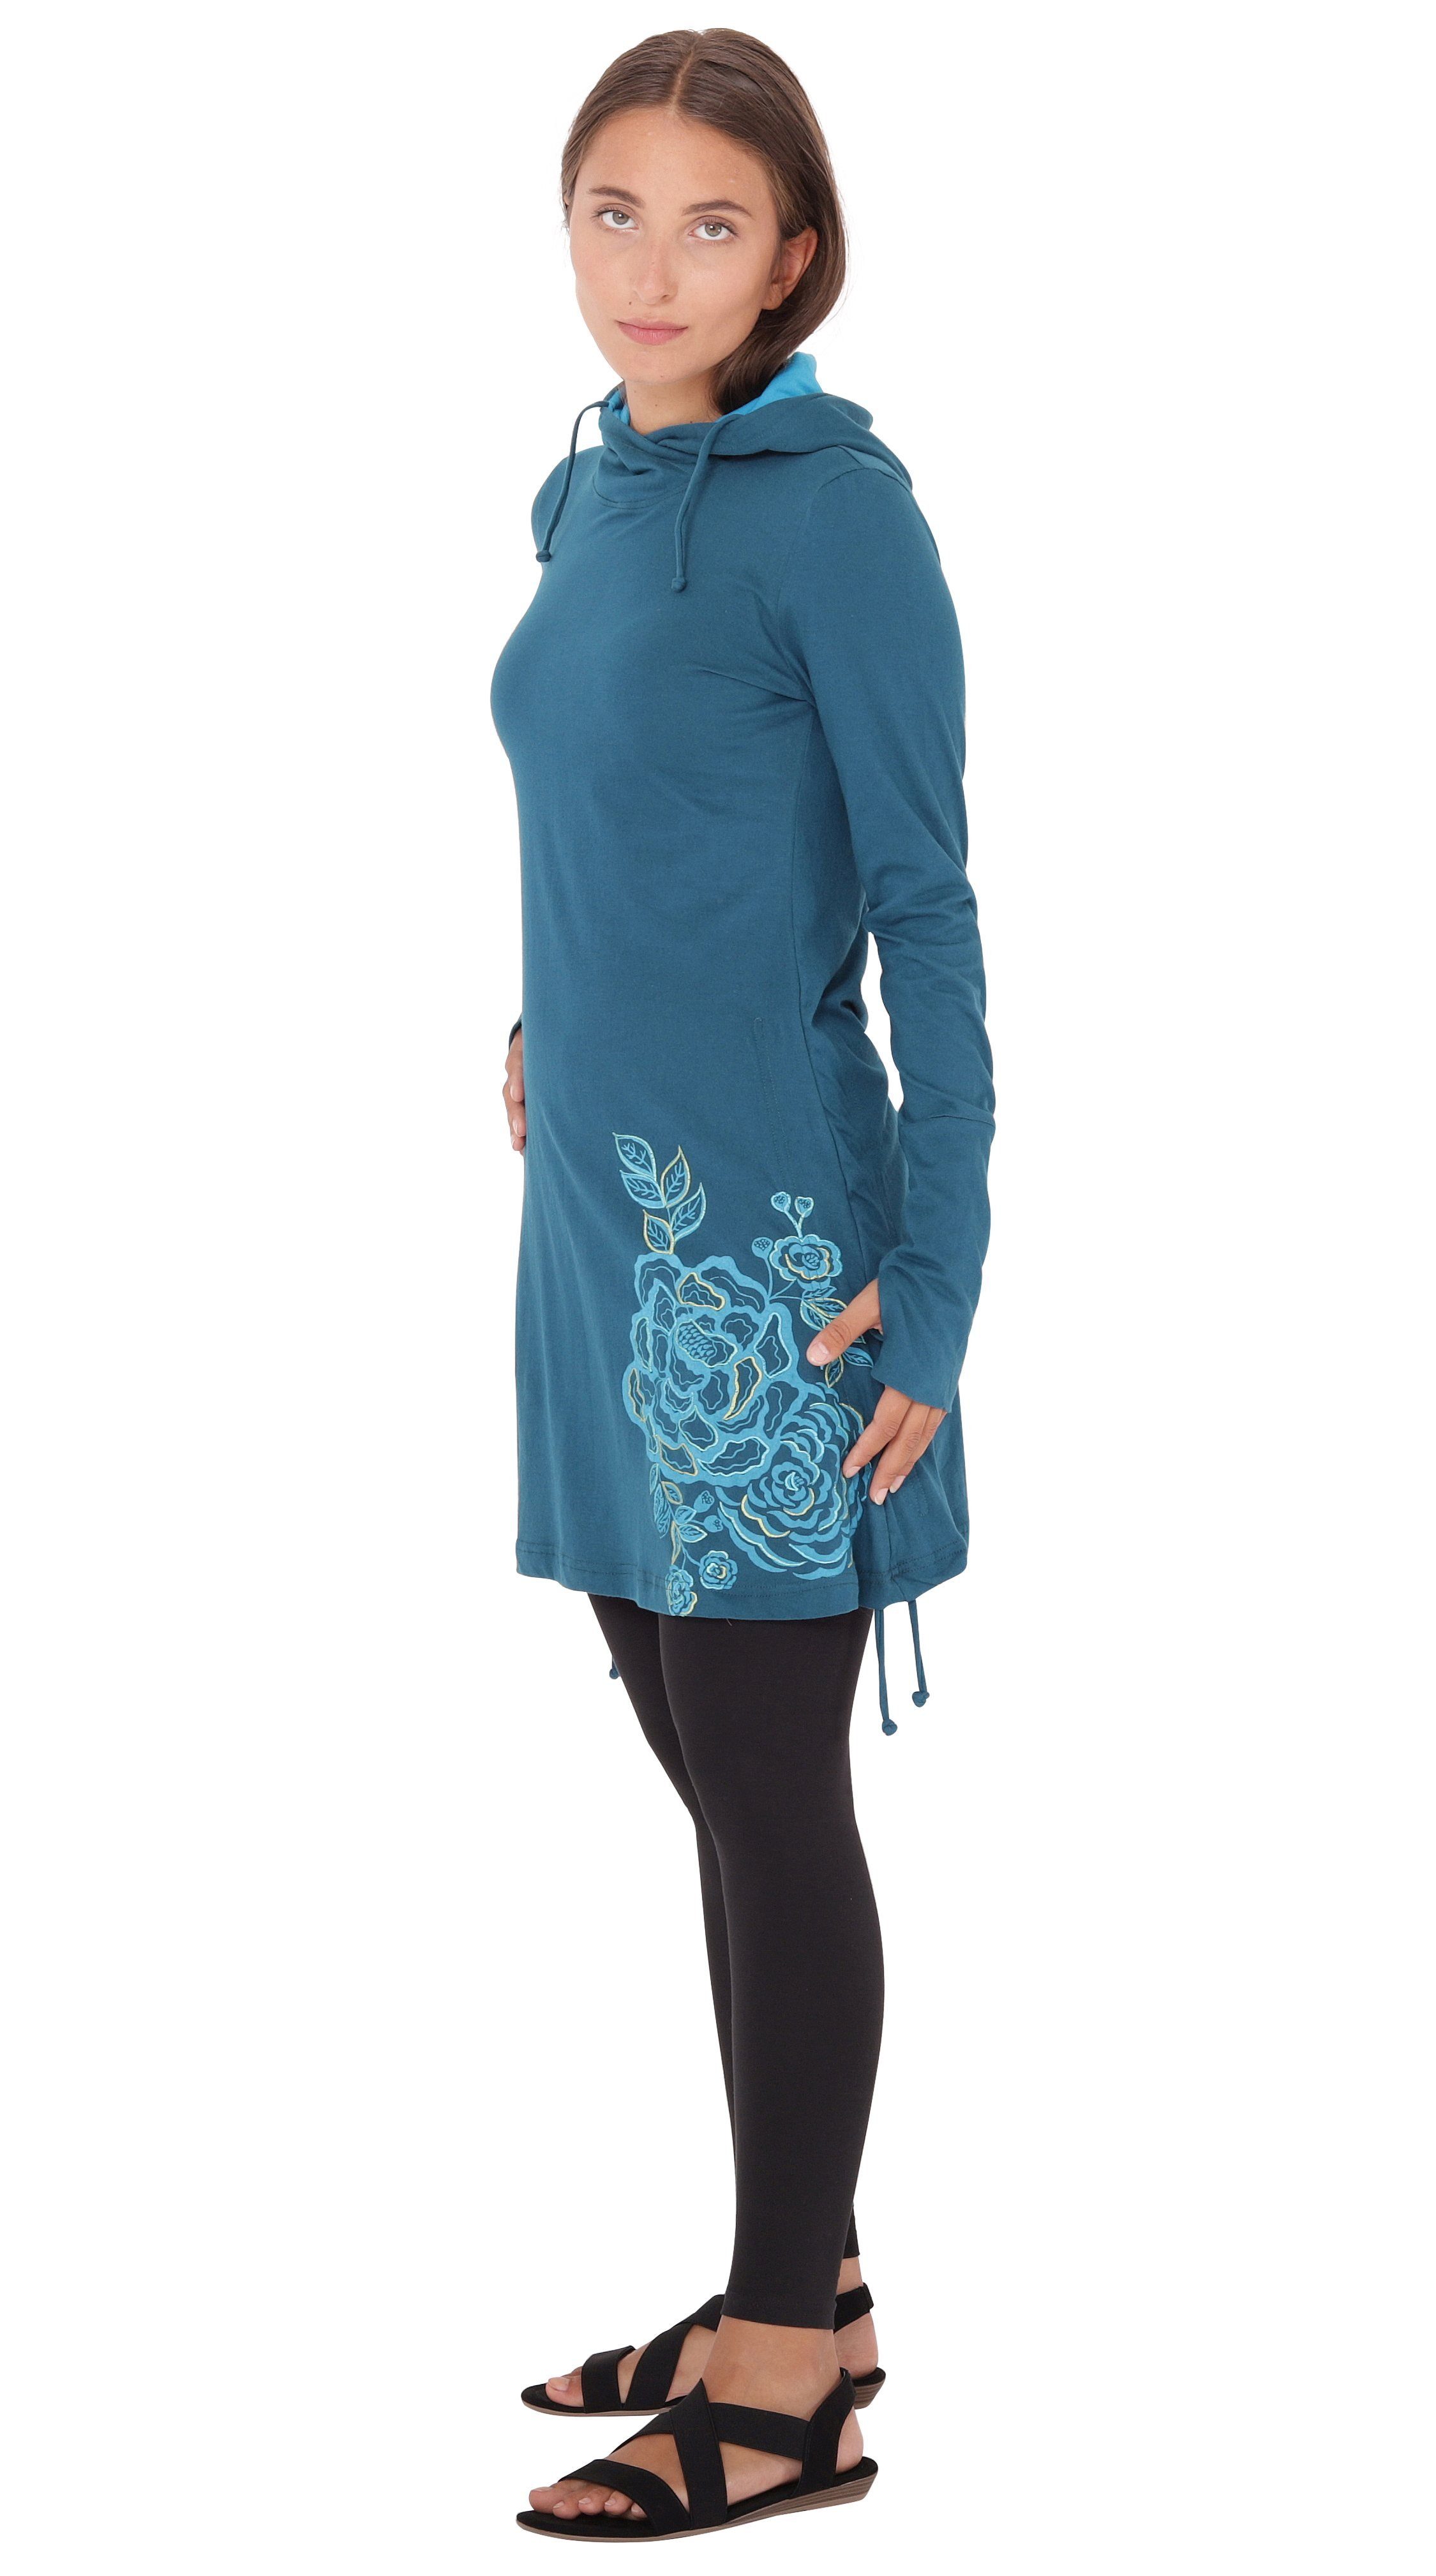 PUREWONDER A-Linien-Kleid Kapuzenkleid mit Jersey Blau Blumen-Print dr132